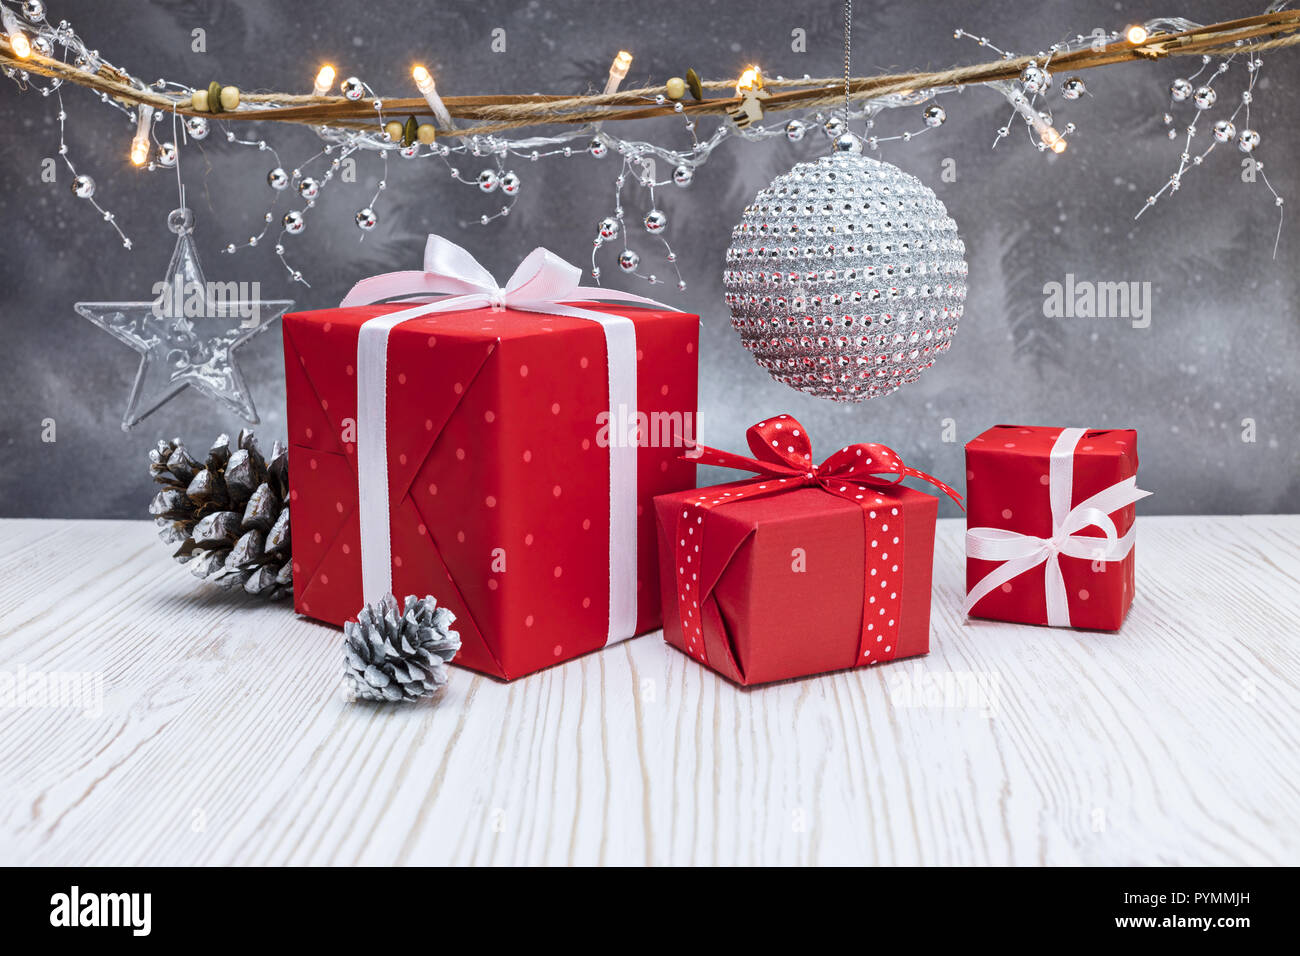 Décorations de Noël, cadeaux, déco rouge silver ball et la foudre garland gris sur fond d'hiver givré Banque D'Images